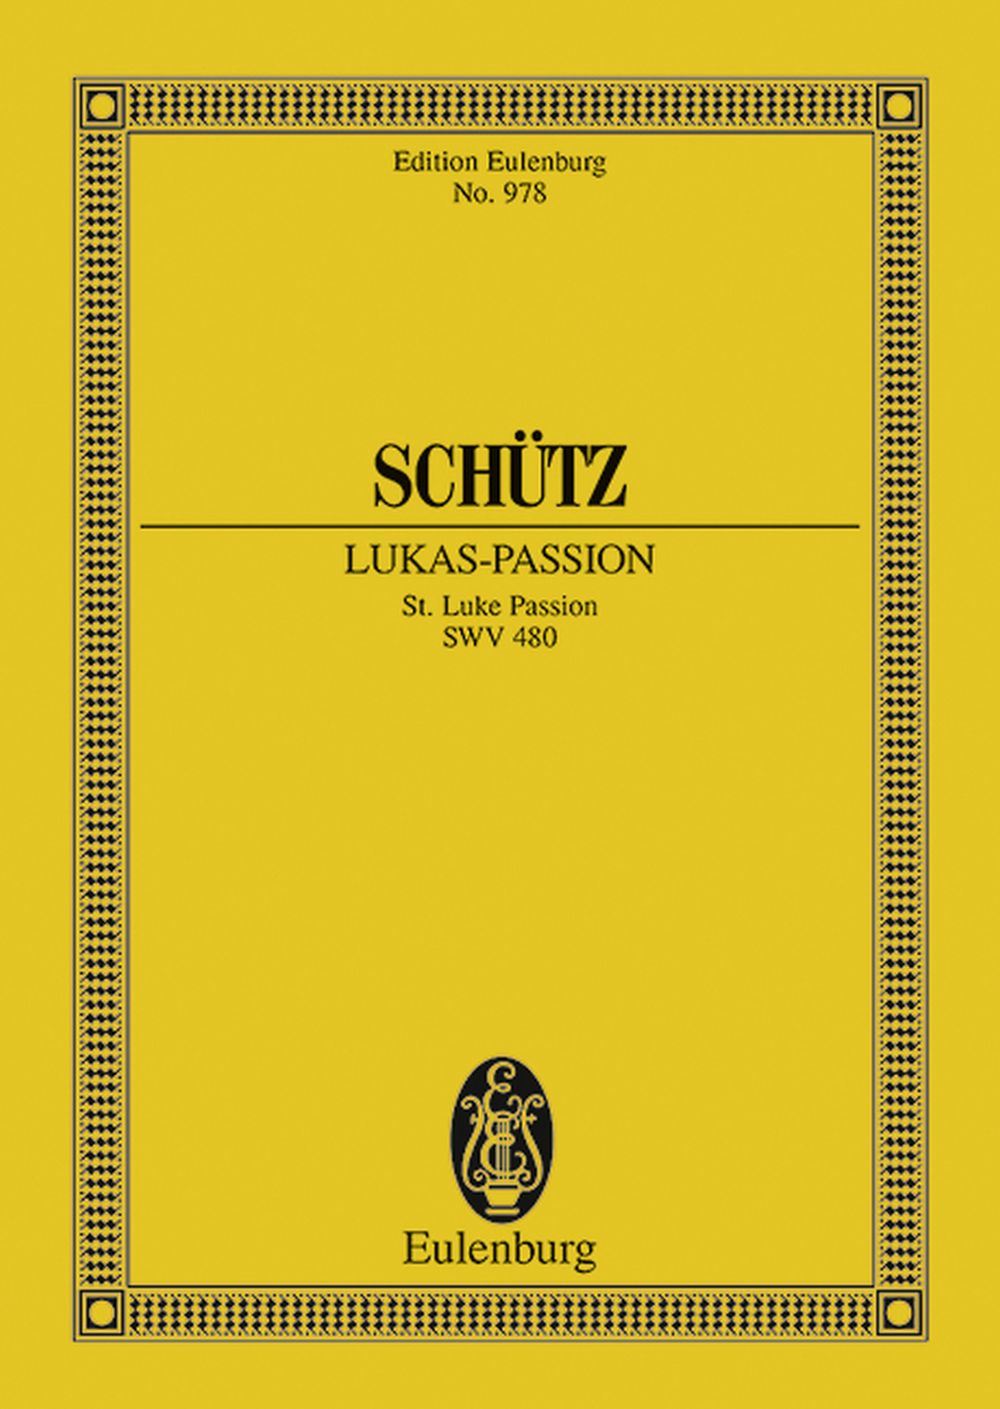 Heinrich Schtz: St. Luke Passion SWV 480: SATB